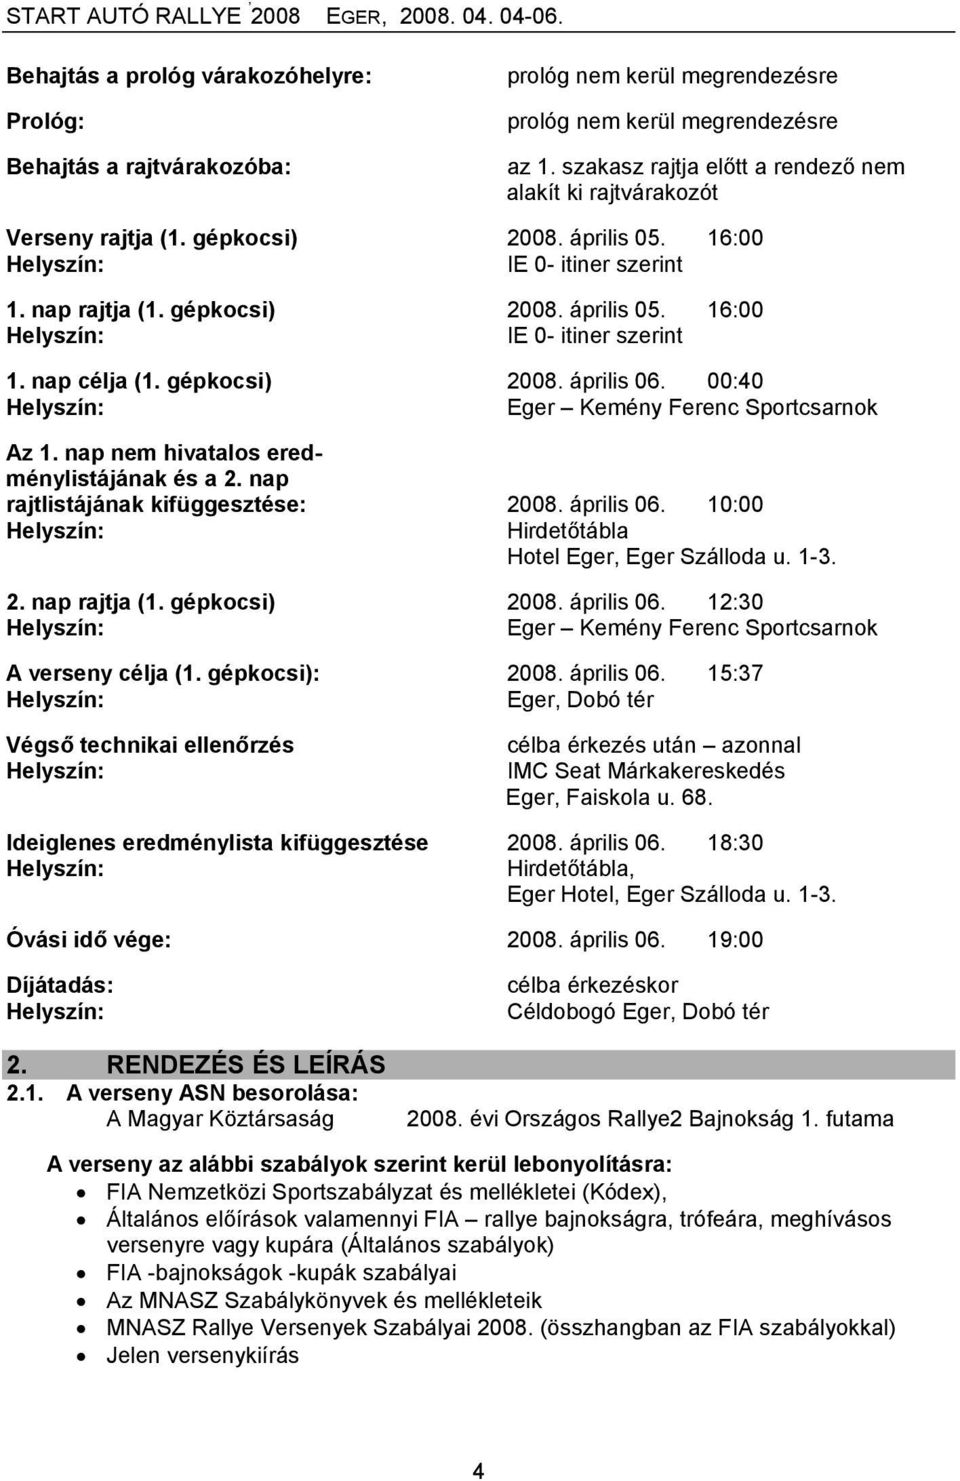 gépkocsi) 2008. április 06. 00:40 Eger Kemény Ferenc Sportcsarnok Az 1. nap nem hivatalos eredménylistájának és a 2. nap rajtlistájának kifüggesztése: 2008. április 06. 10:00 Hirdetőtábla Hotel Eger, Eger Szálloda u.